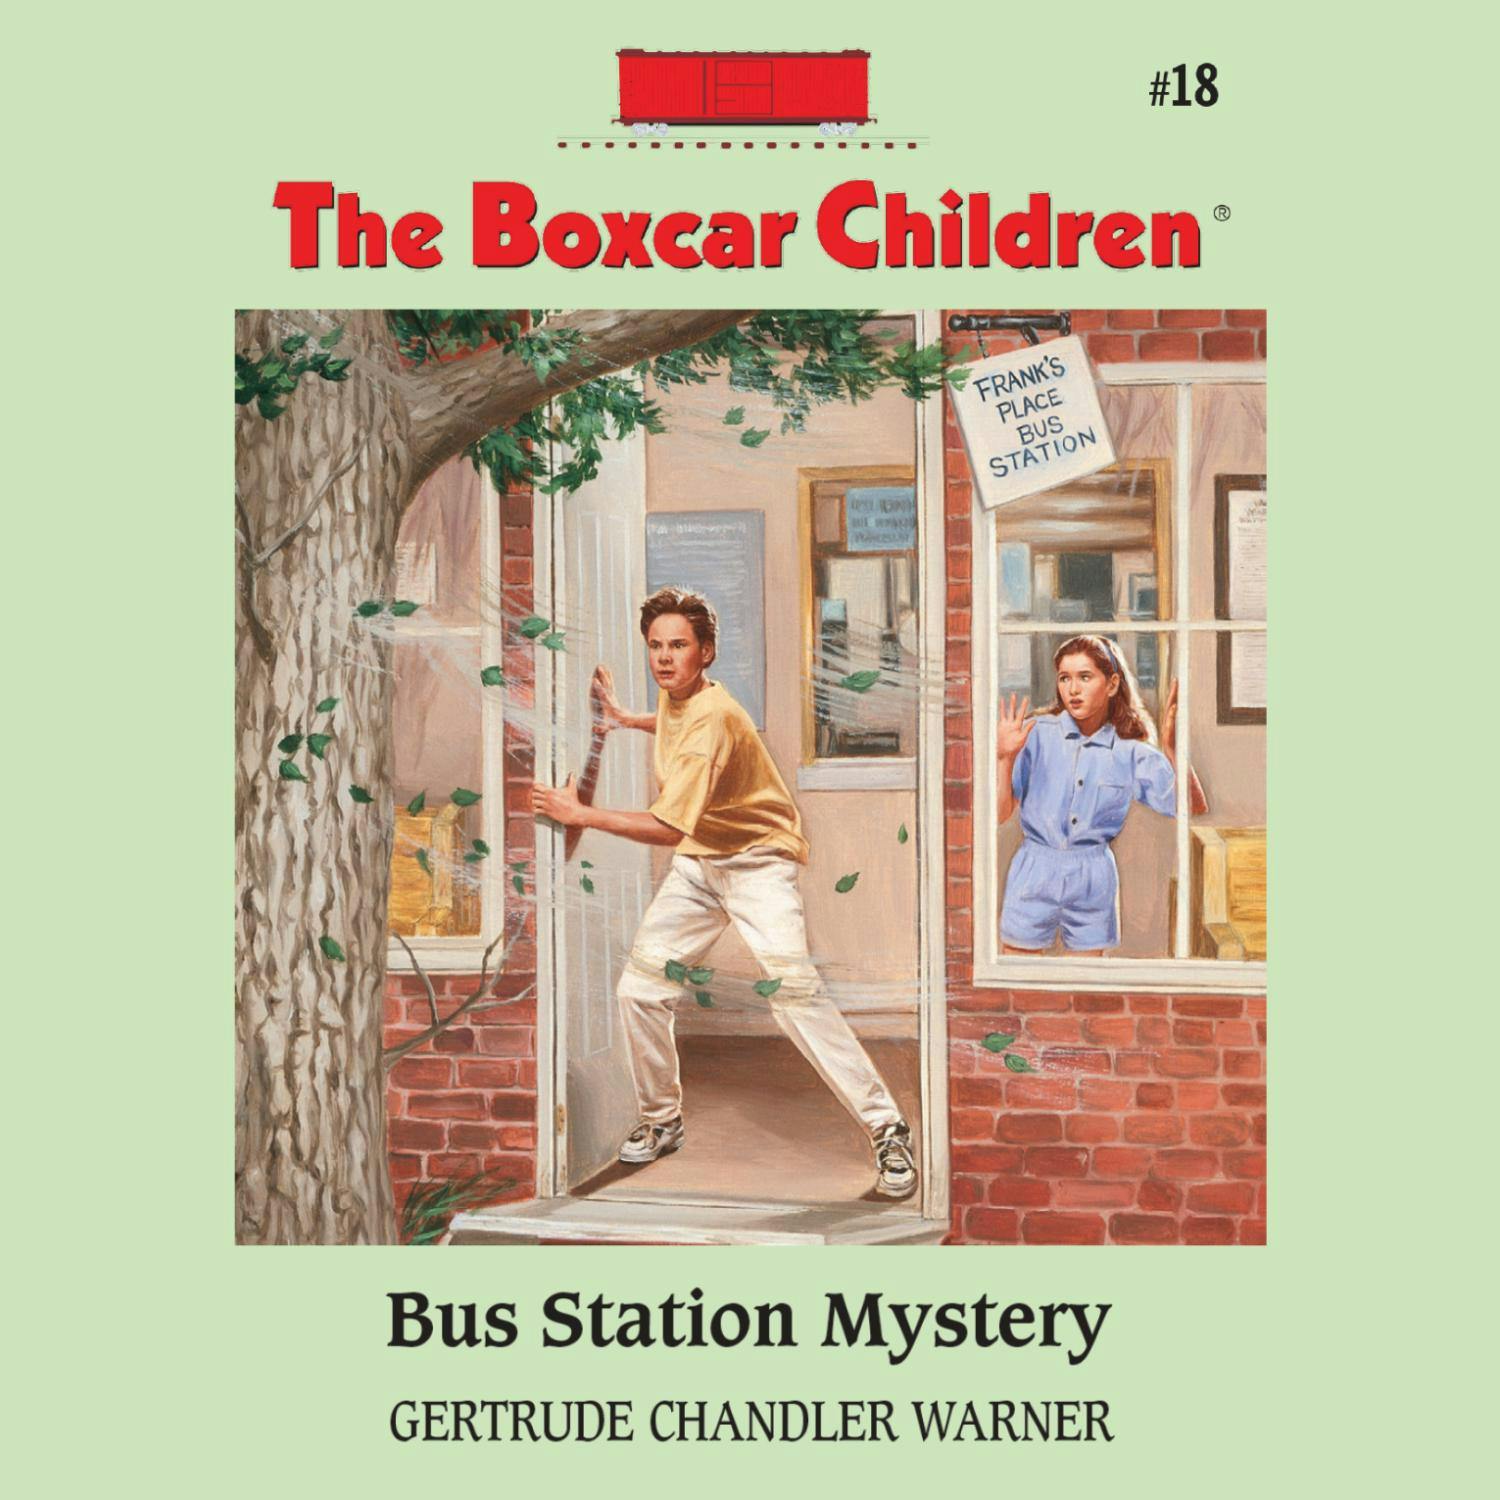 Bus Station Mystery - Gertrude Chandler Warner